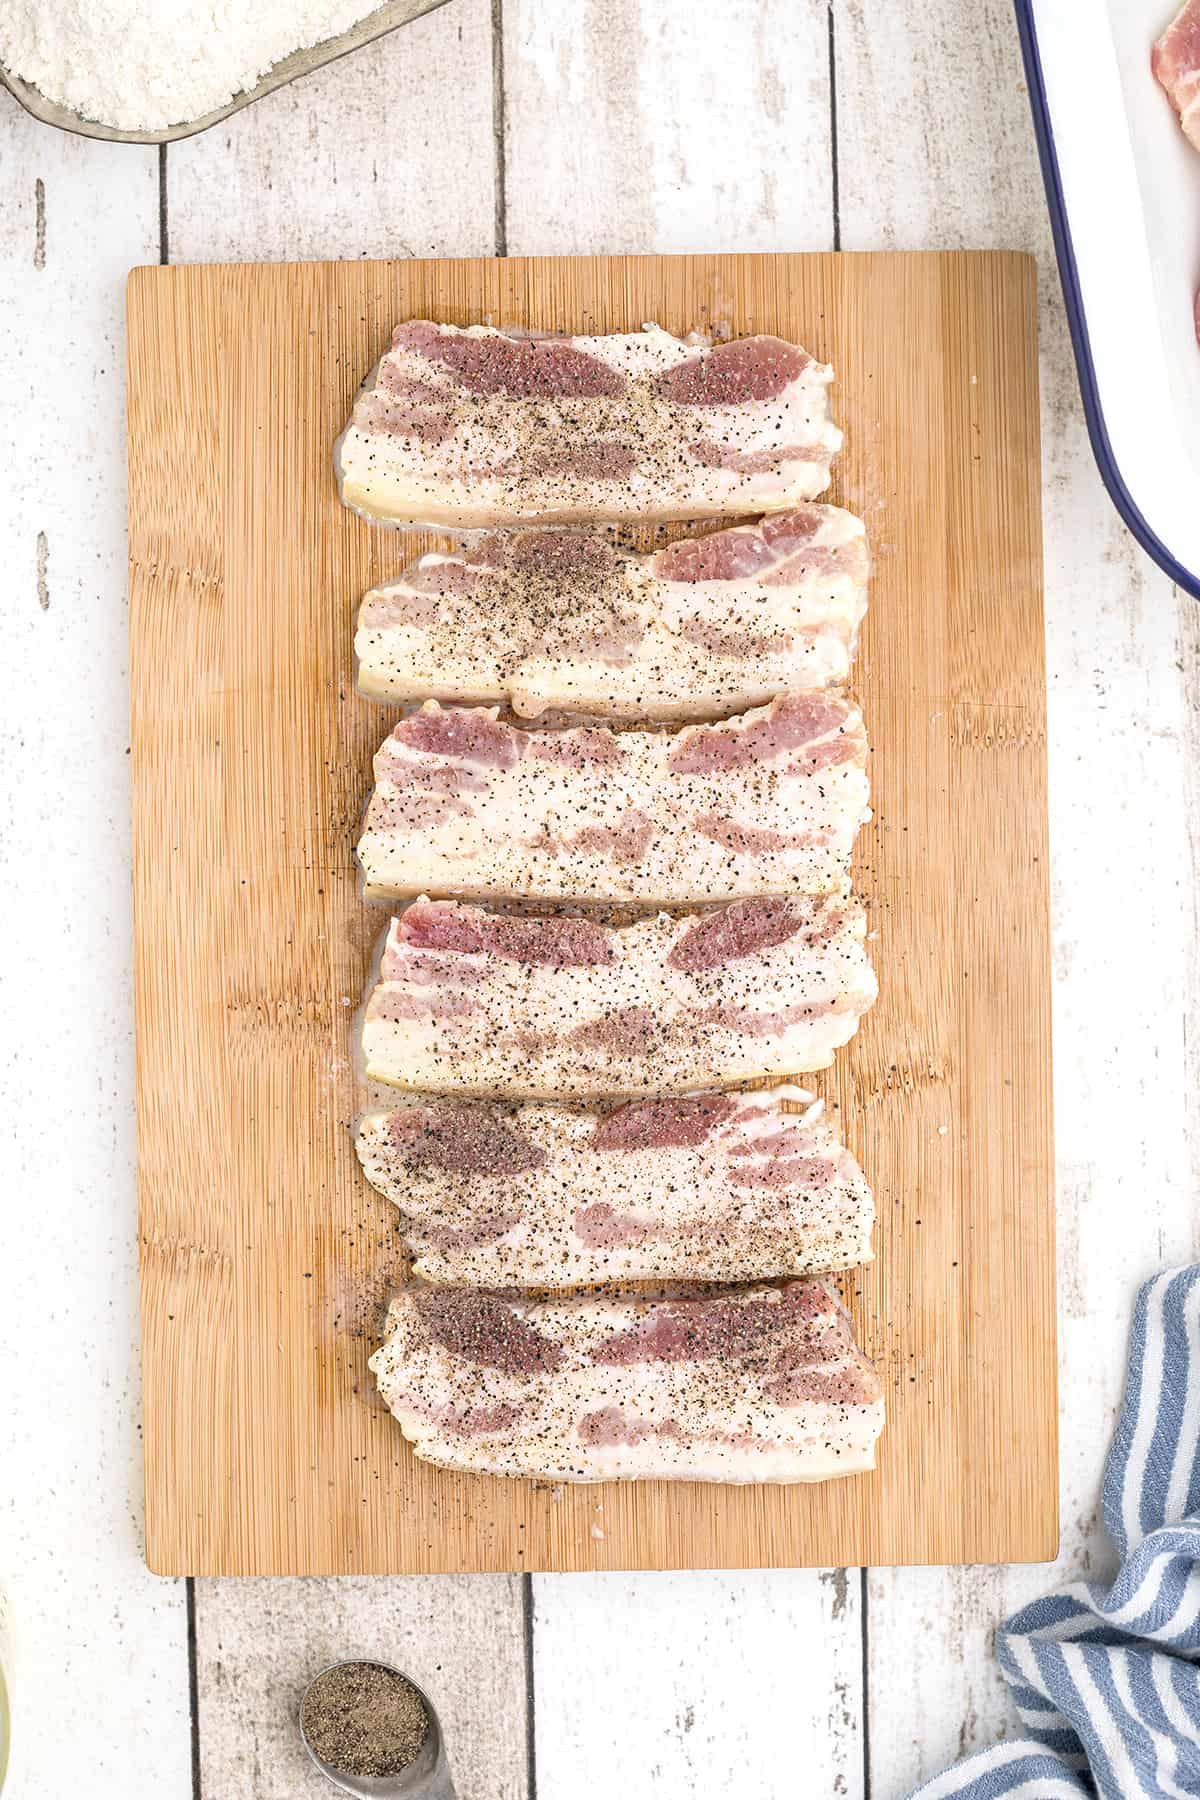 Salt pork slices on a board with ground pepper sprinkled over top.